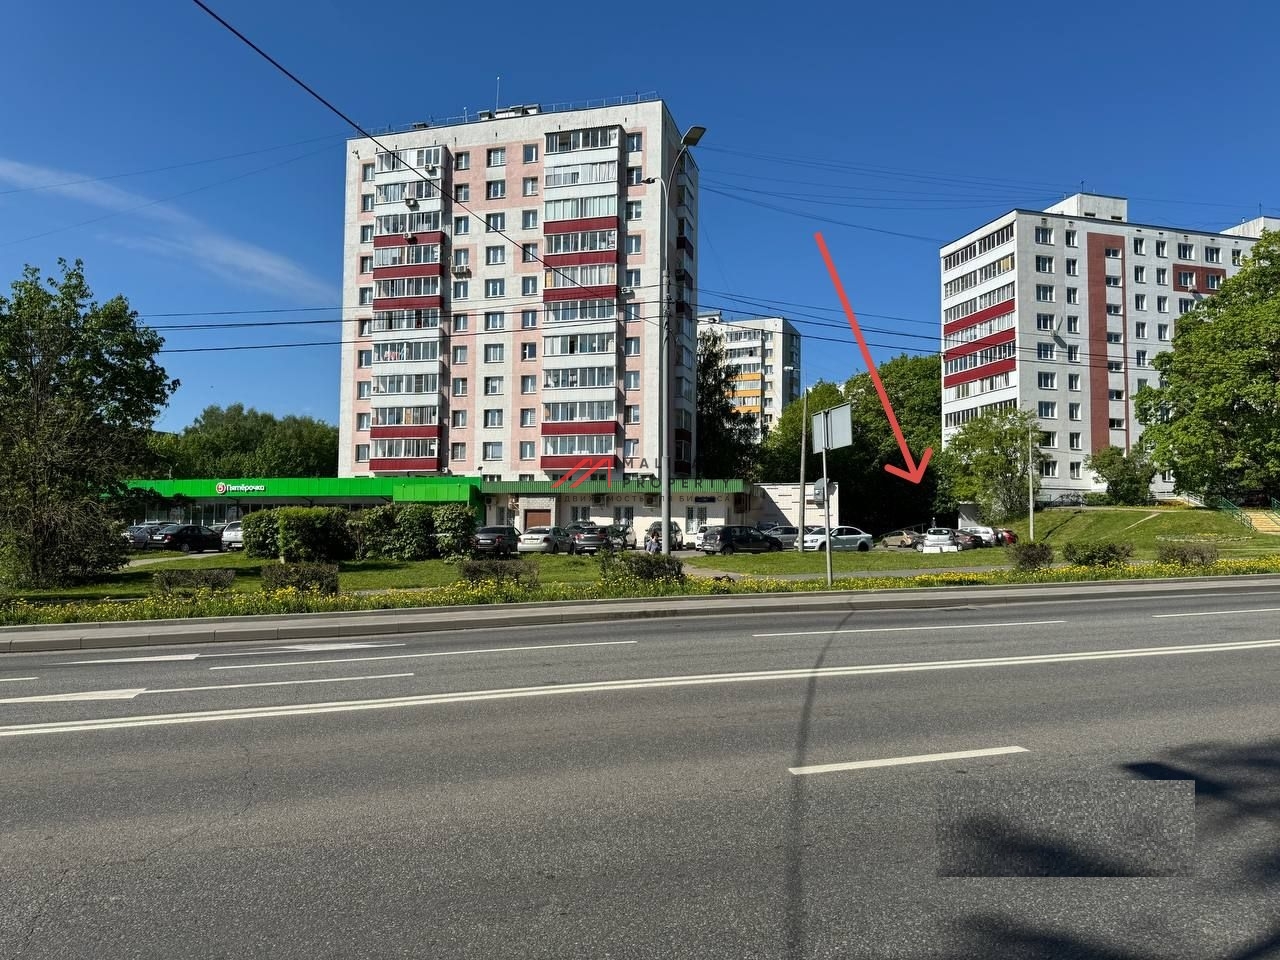 Продажа коммерческого помещения с арендатором в Зеленограде 